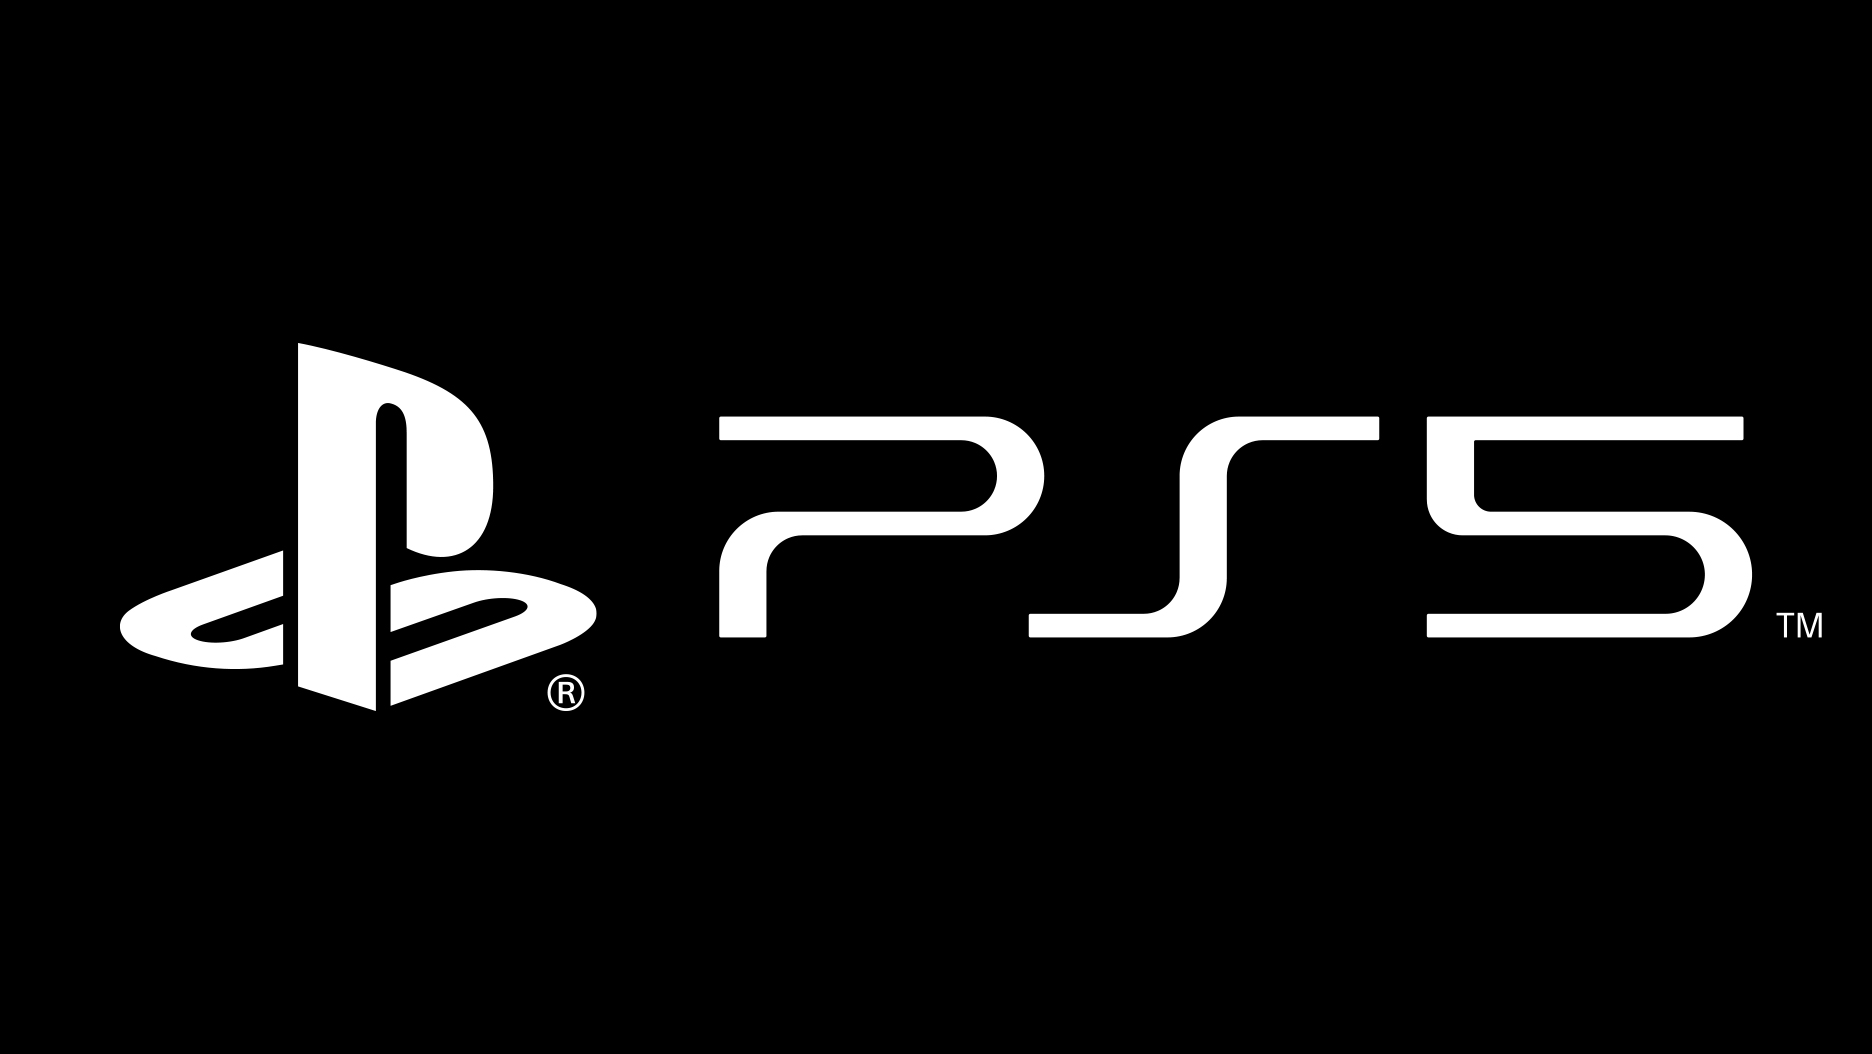 Sony PLAYSTATION 5 логотип. Sony PLAYSTATION 4 logo. PLAYSTATION 5 logo PNG. PLAYSTATION 5 Slim. Logo 5 4